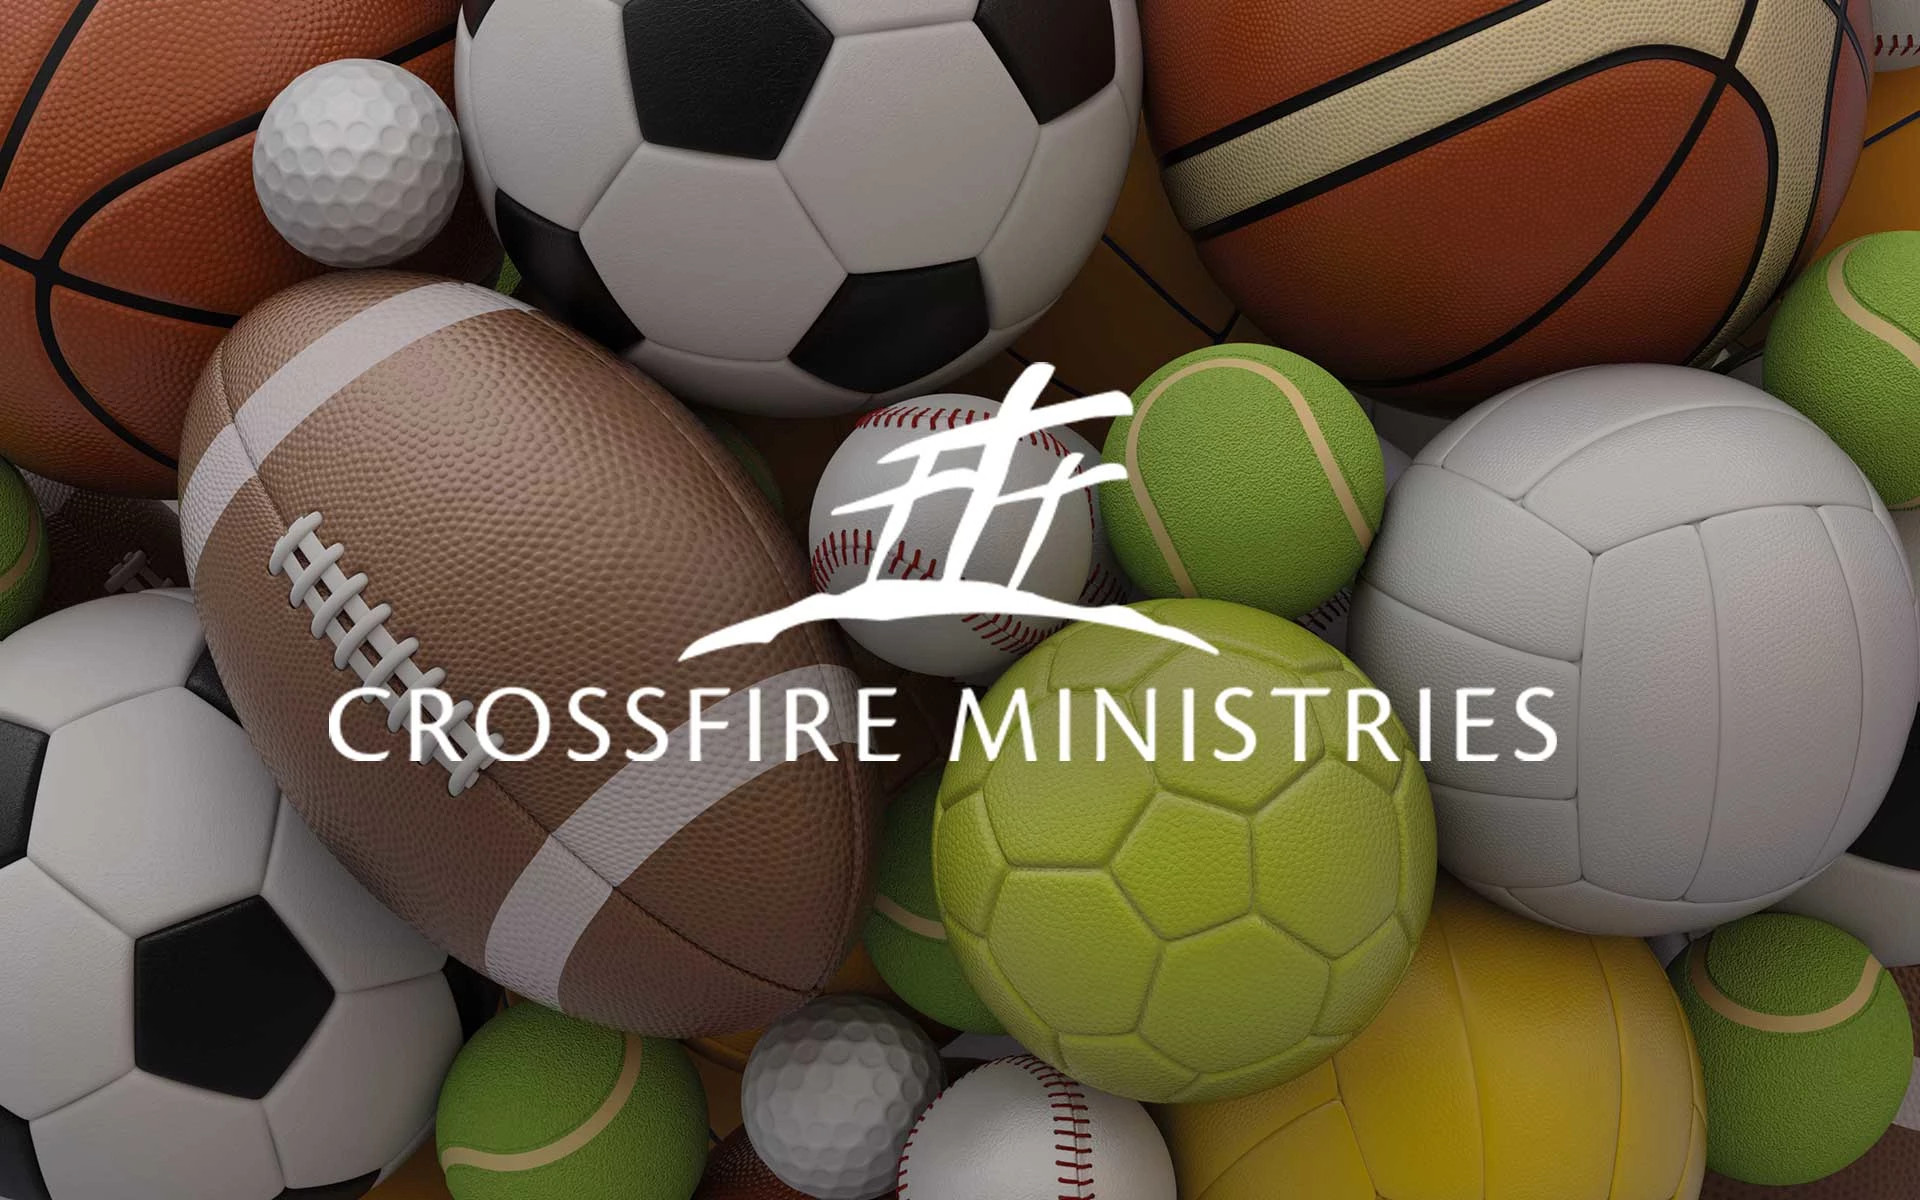 Crossfire Ministries - Evangelism Through Sports - Part 2